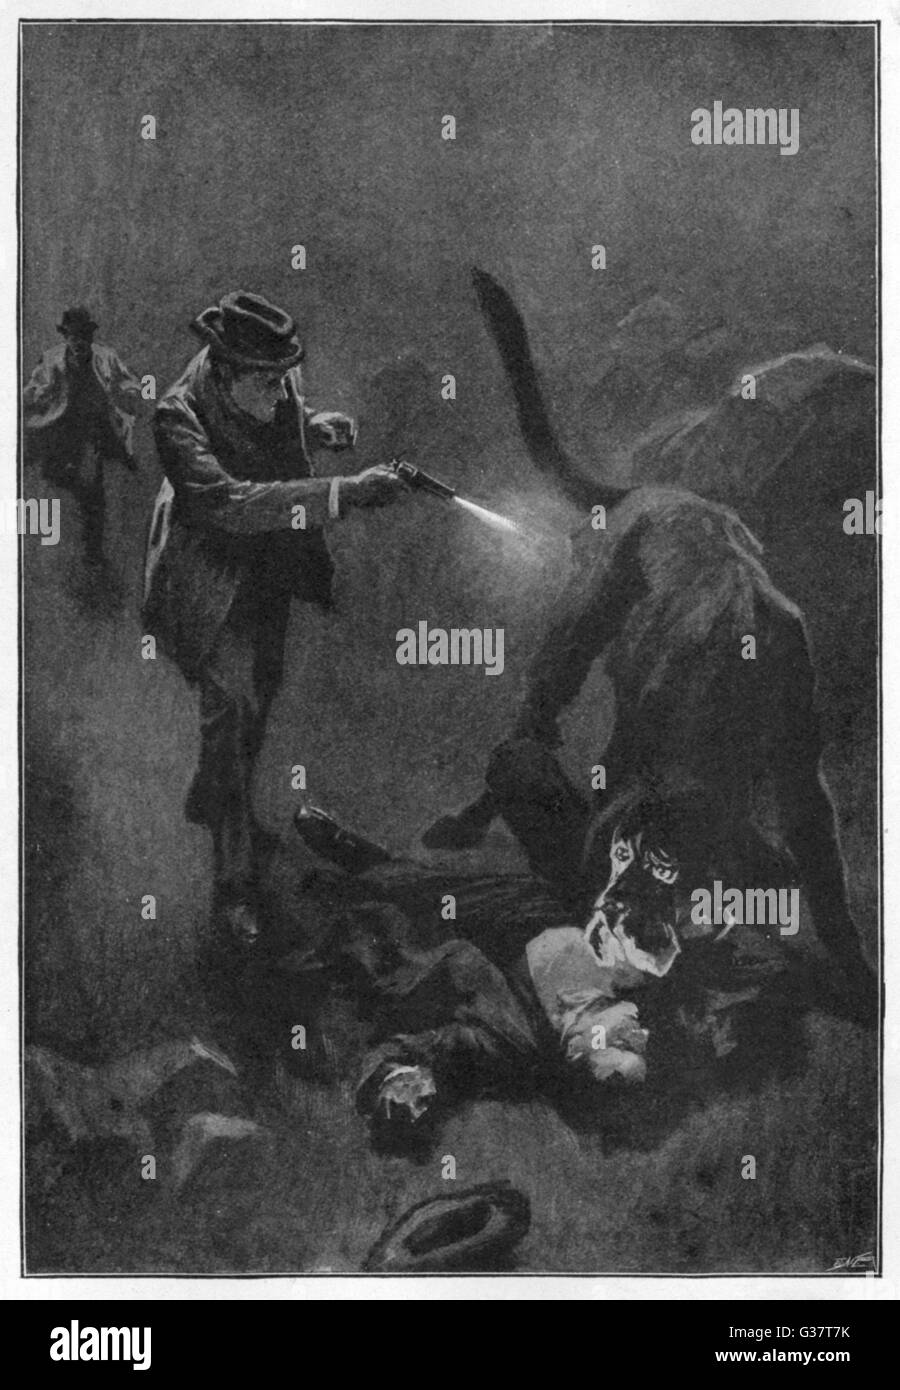 HOUND OF THE BASKERVILLES Holmes schießt den finsteren Hund: "Holmes fünf Barrel seinen Revolver in die Kreatur Flanke entleert".     Datum: Erstveröffentlichung: 1901-2 Stockfoto